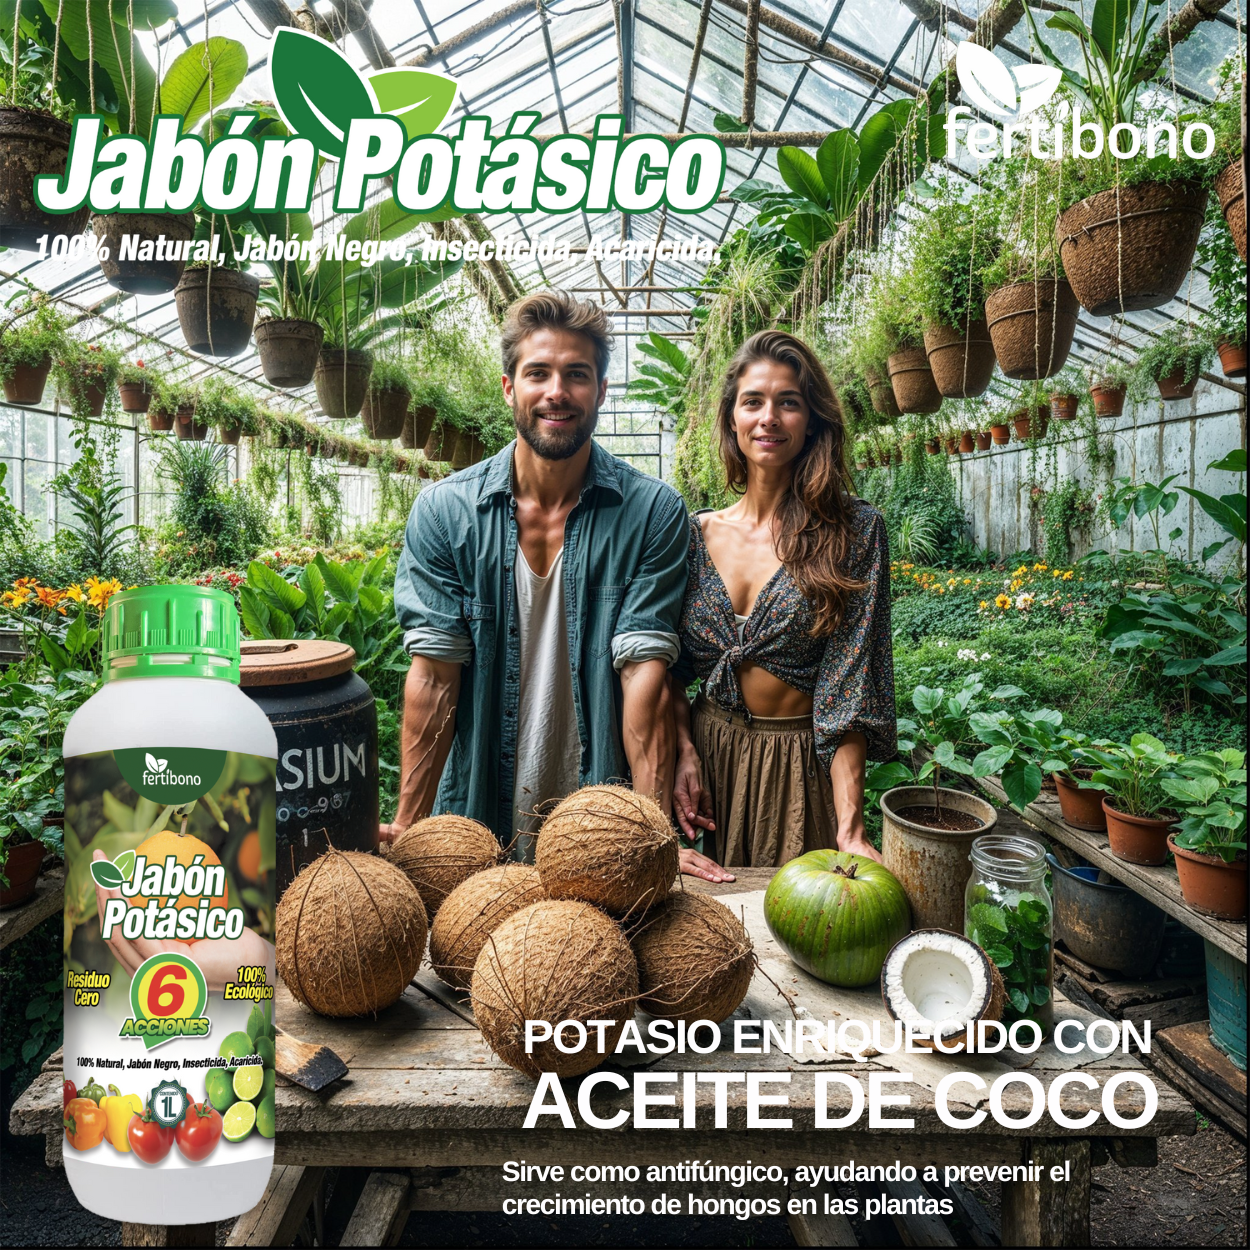 FERTIBONO Jabon Potasico Ultra Concentrado - El Más Eficaz 100% Natural y Residuo Cero Insecticida para Plantas, Potente contra Pulgón (1L)